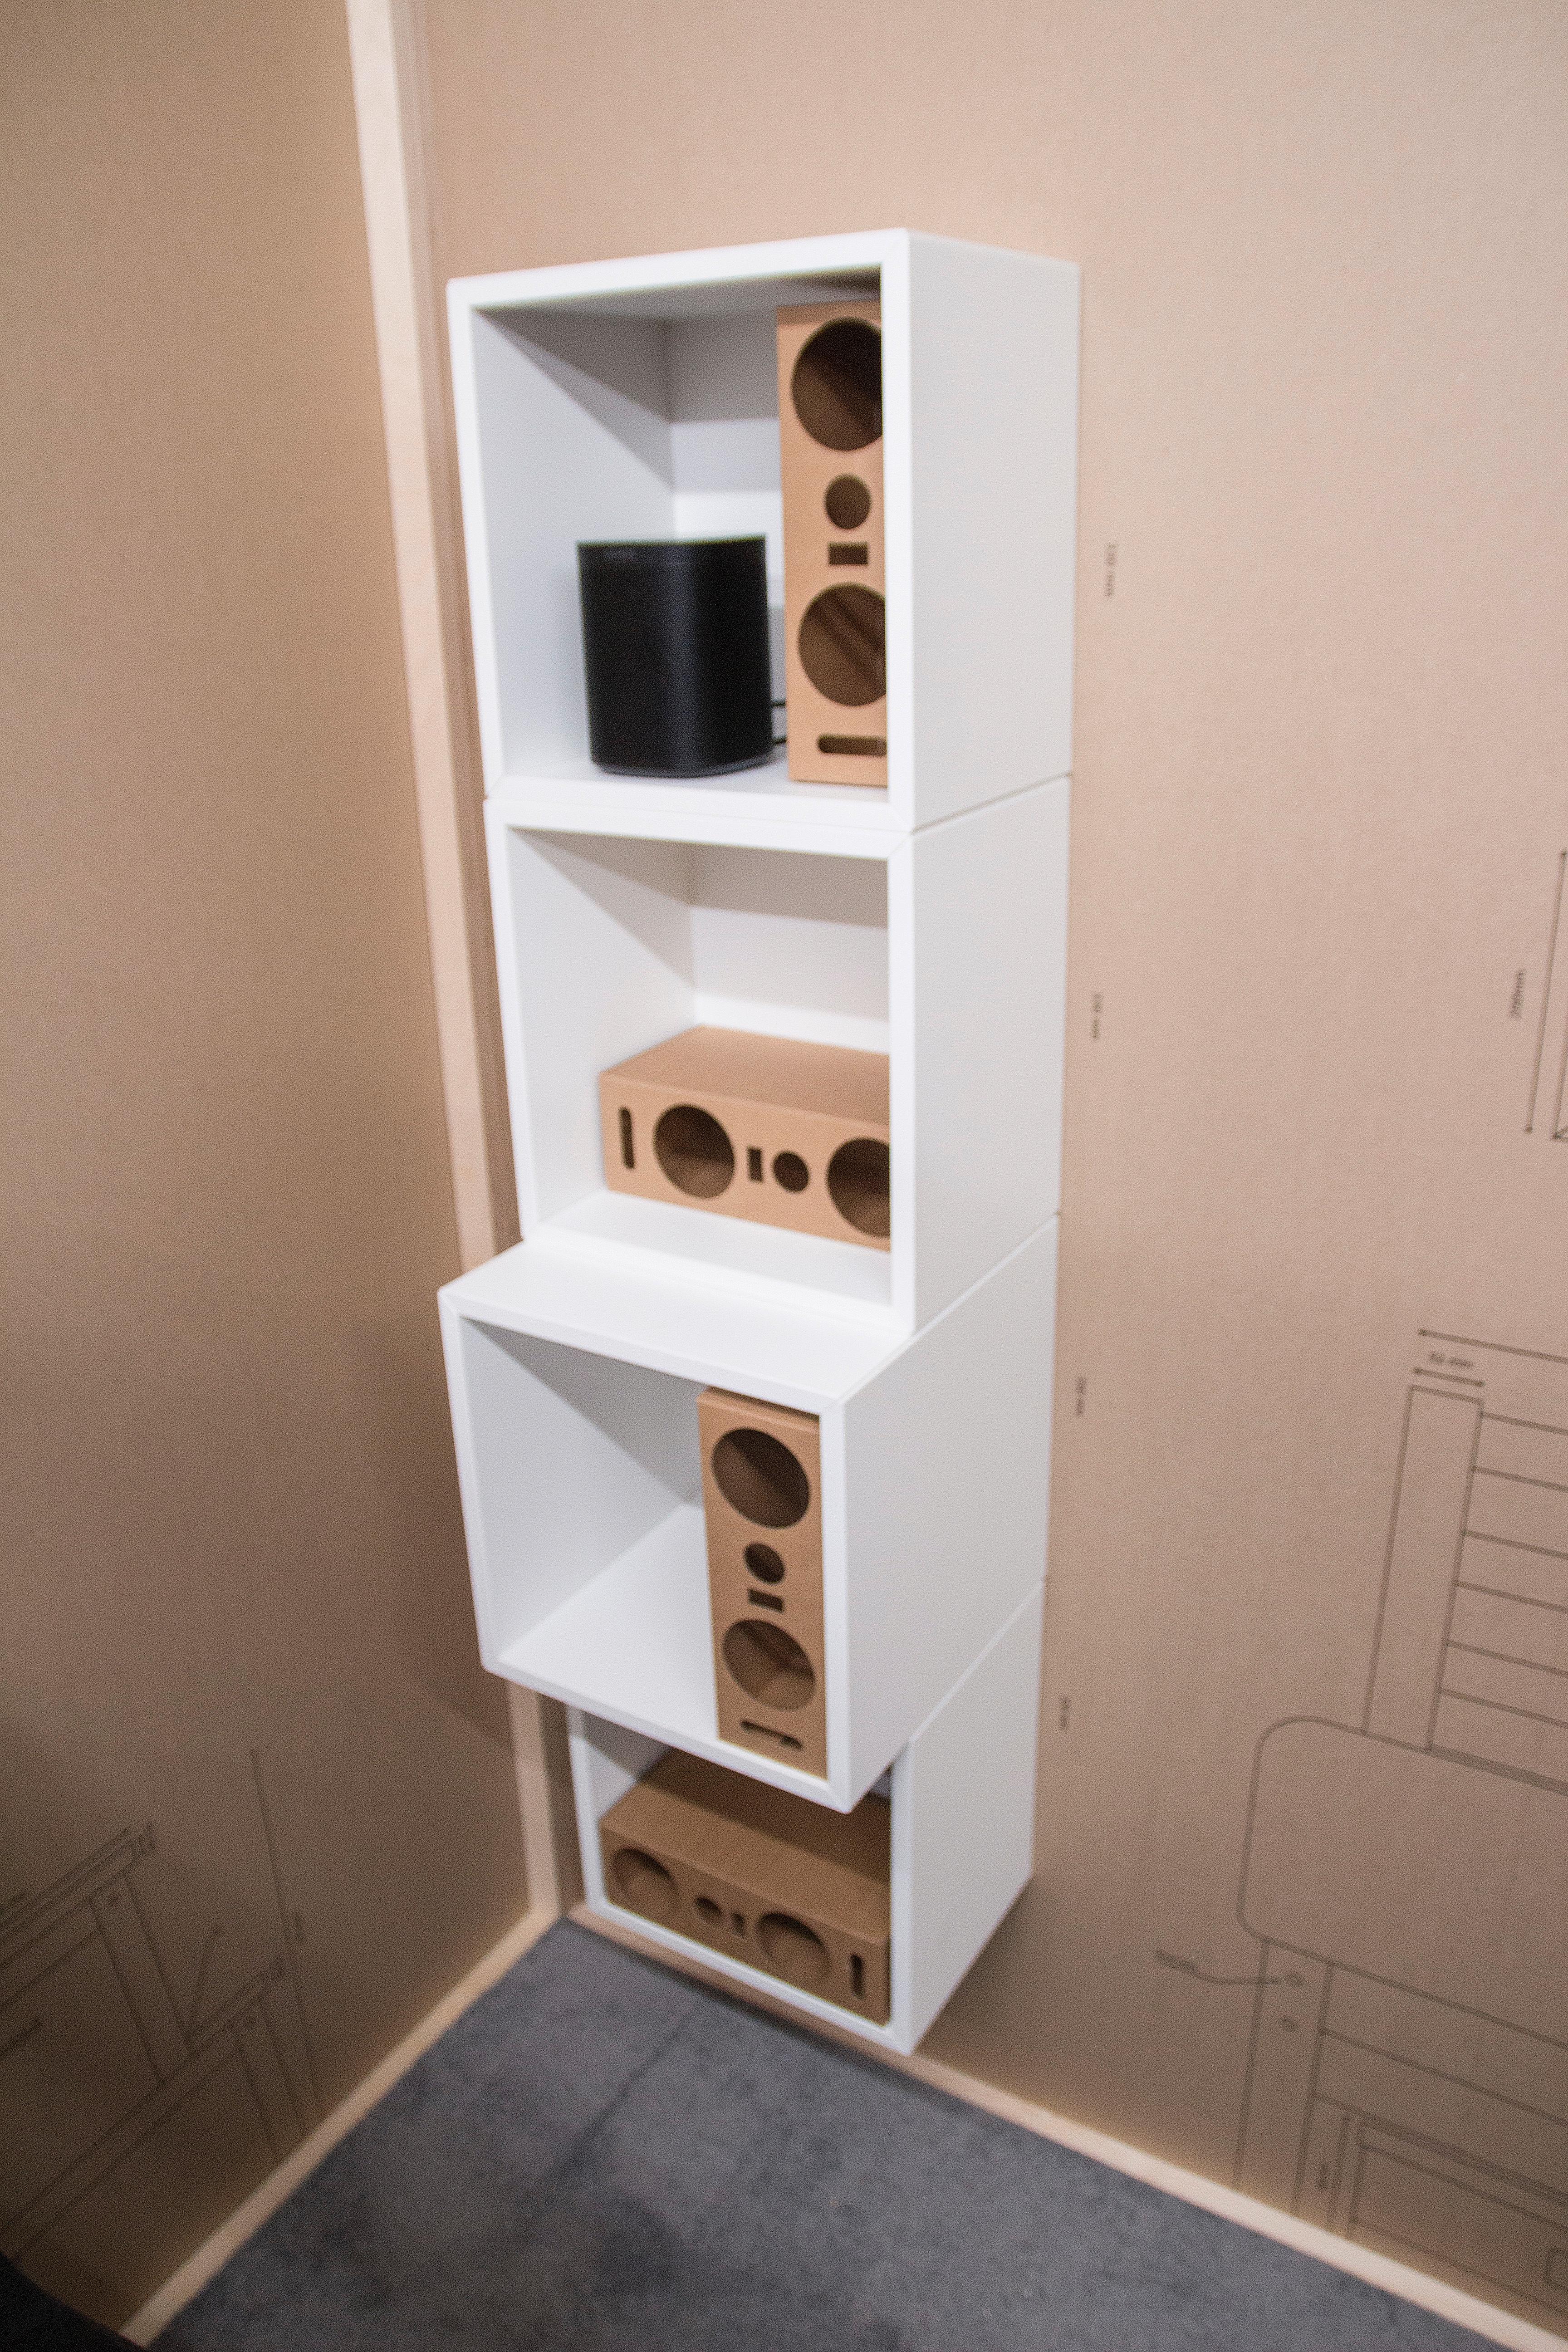 Prototypen av høyttaleren er utviklet for å passe i Ikeas hyllestørrelser, blant annet i Kallax-serien. Øverst en Sonos One.